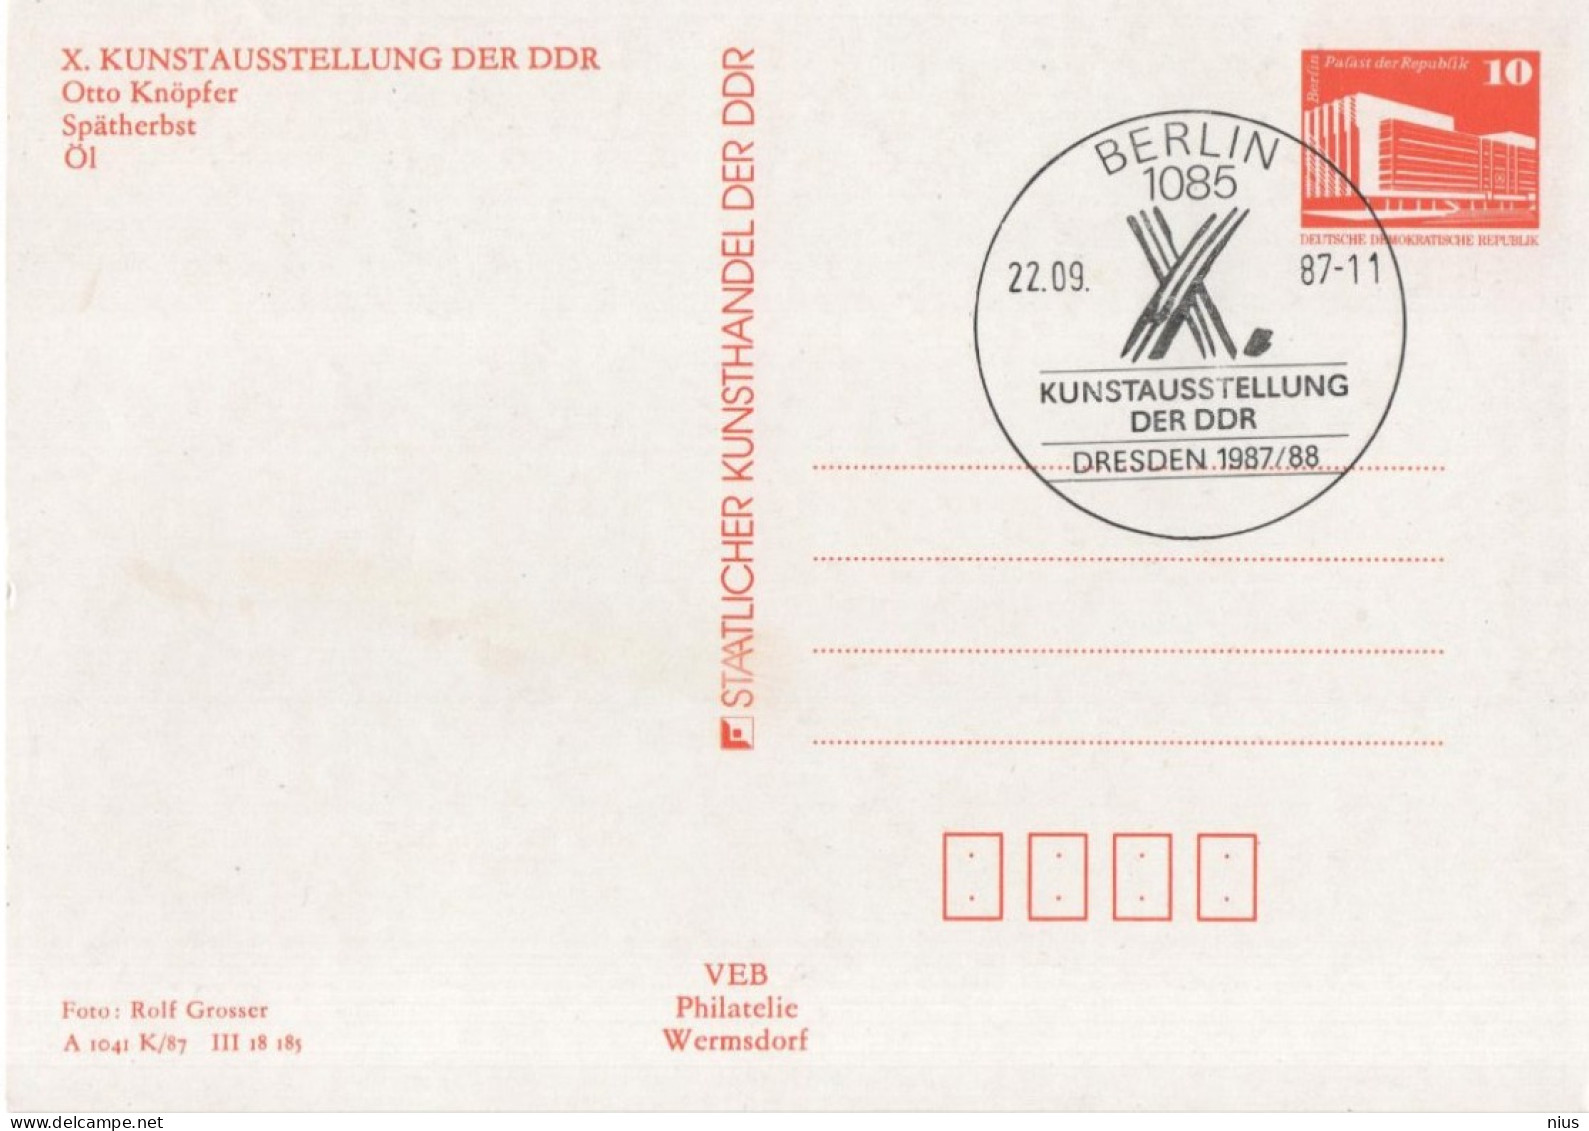 Germany Deutschland DDR 1987 Kunstausstellung, Otto Knopfer, Spatherbst, Canceled In Berlin - Postkarten - Gebraucht